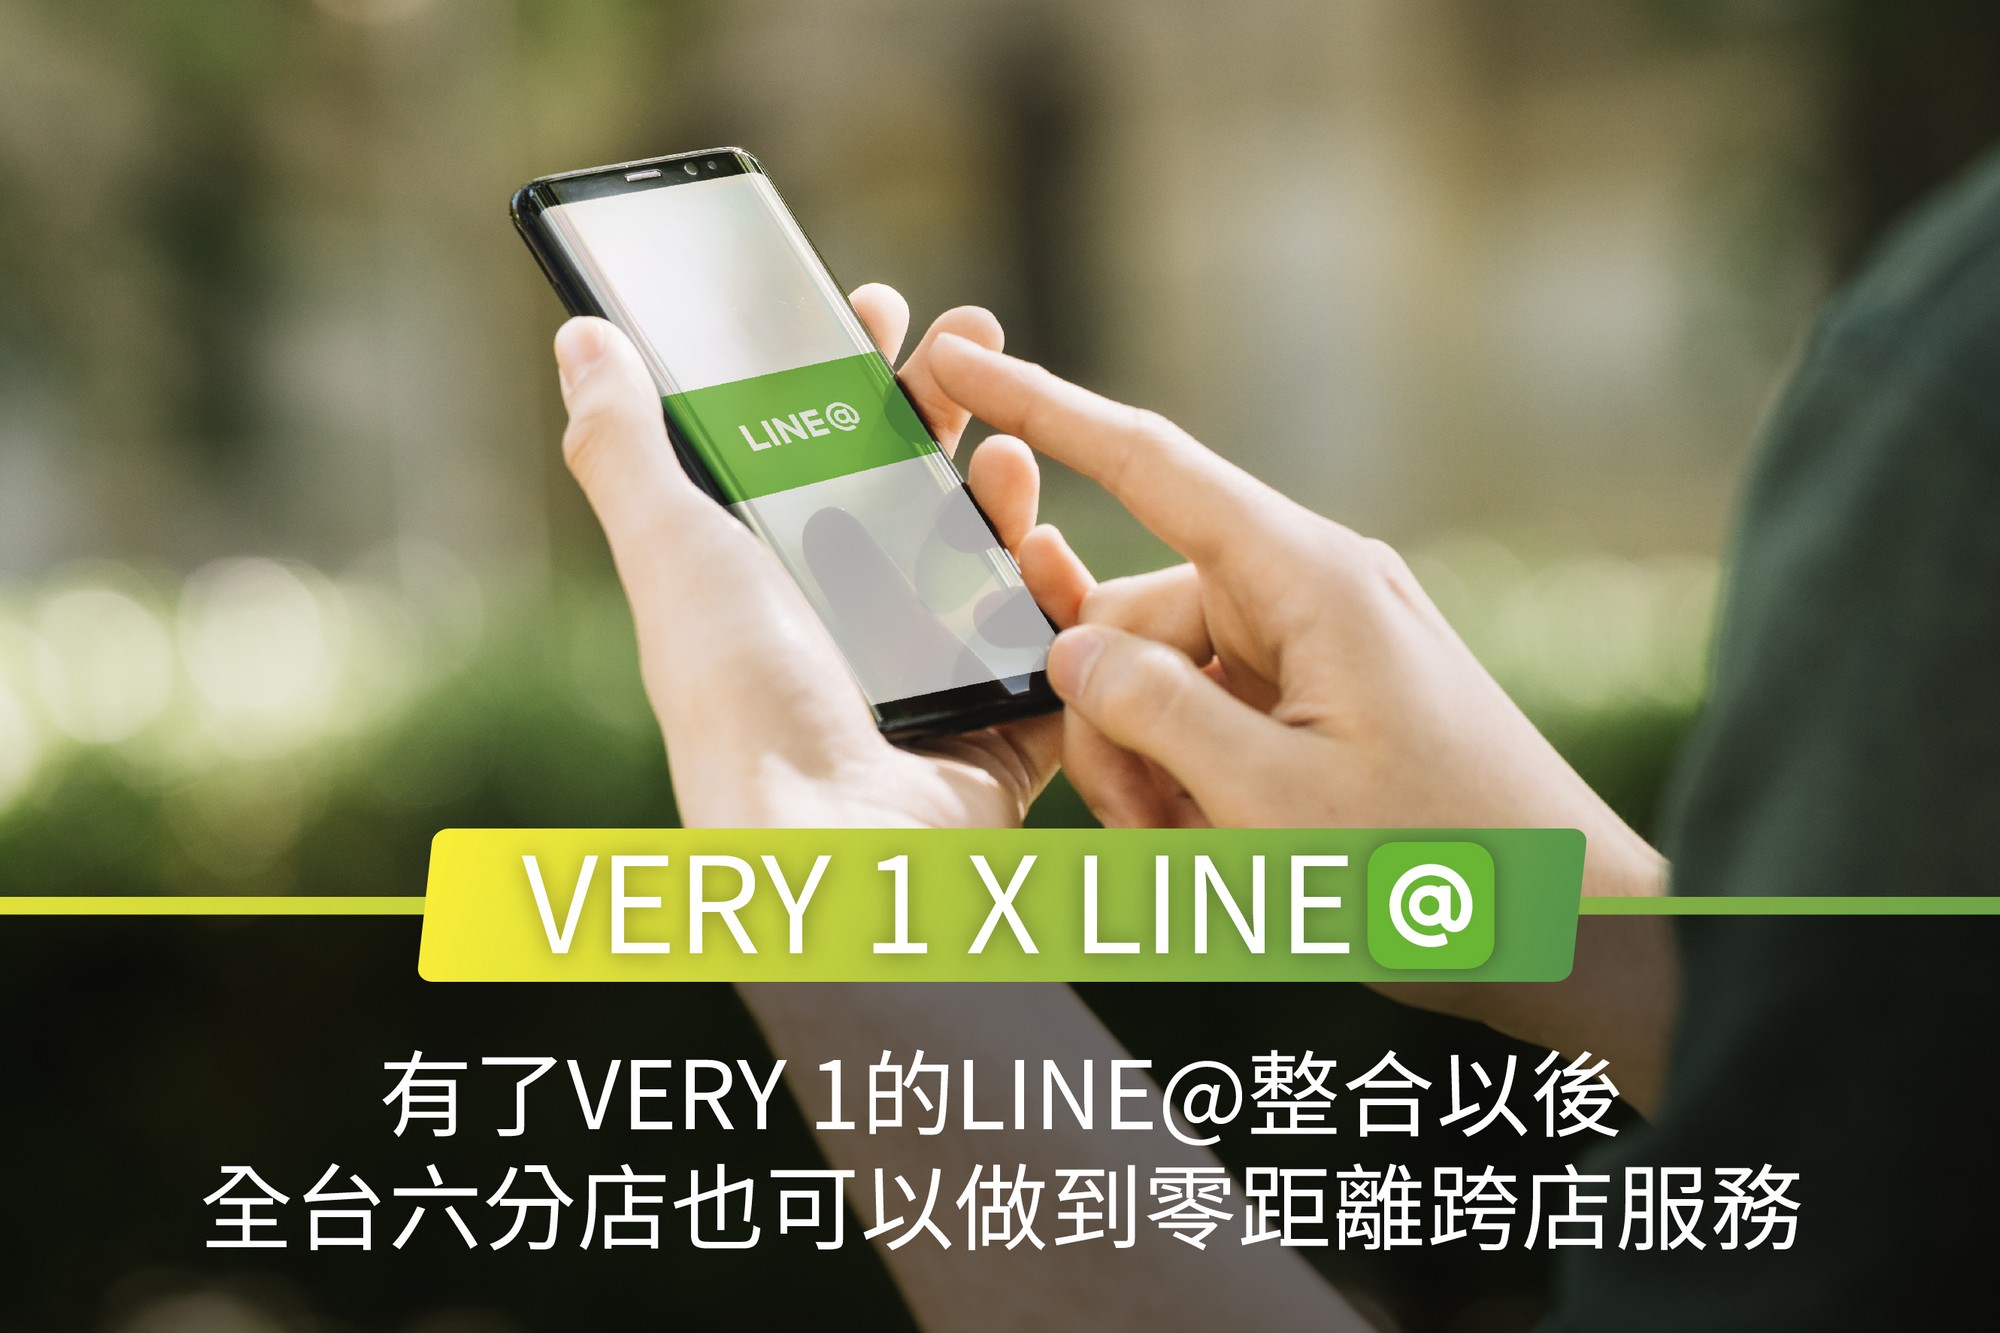 line@,line@管理,Line@系統,Line@推播,Line@行銷